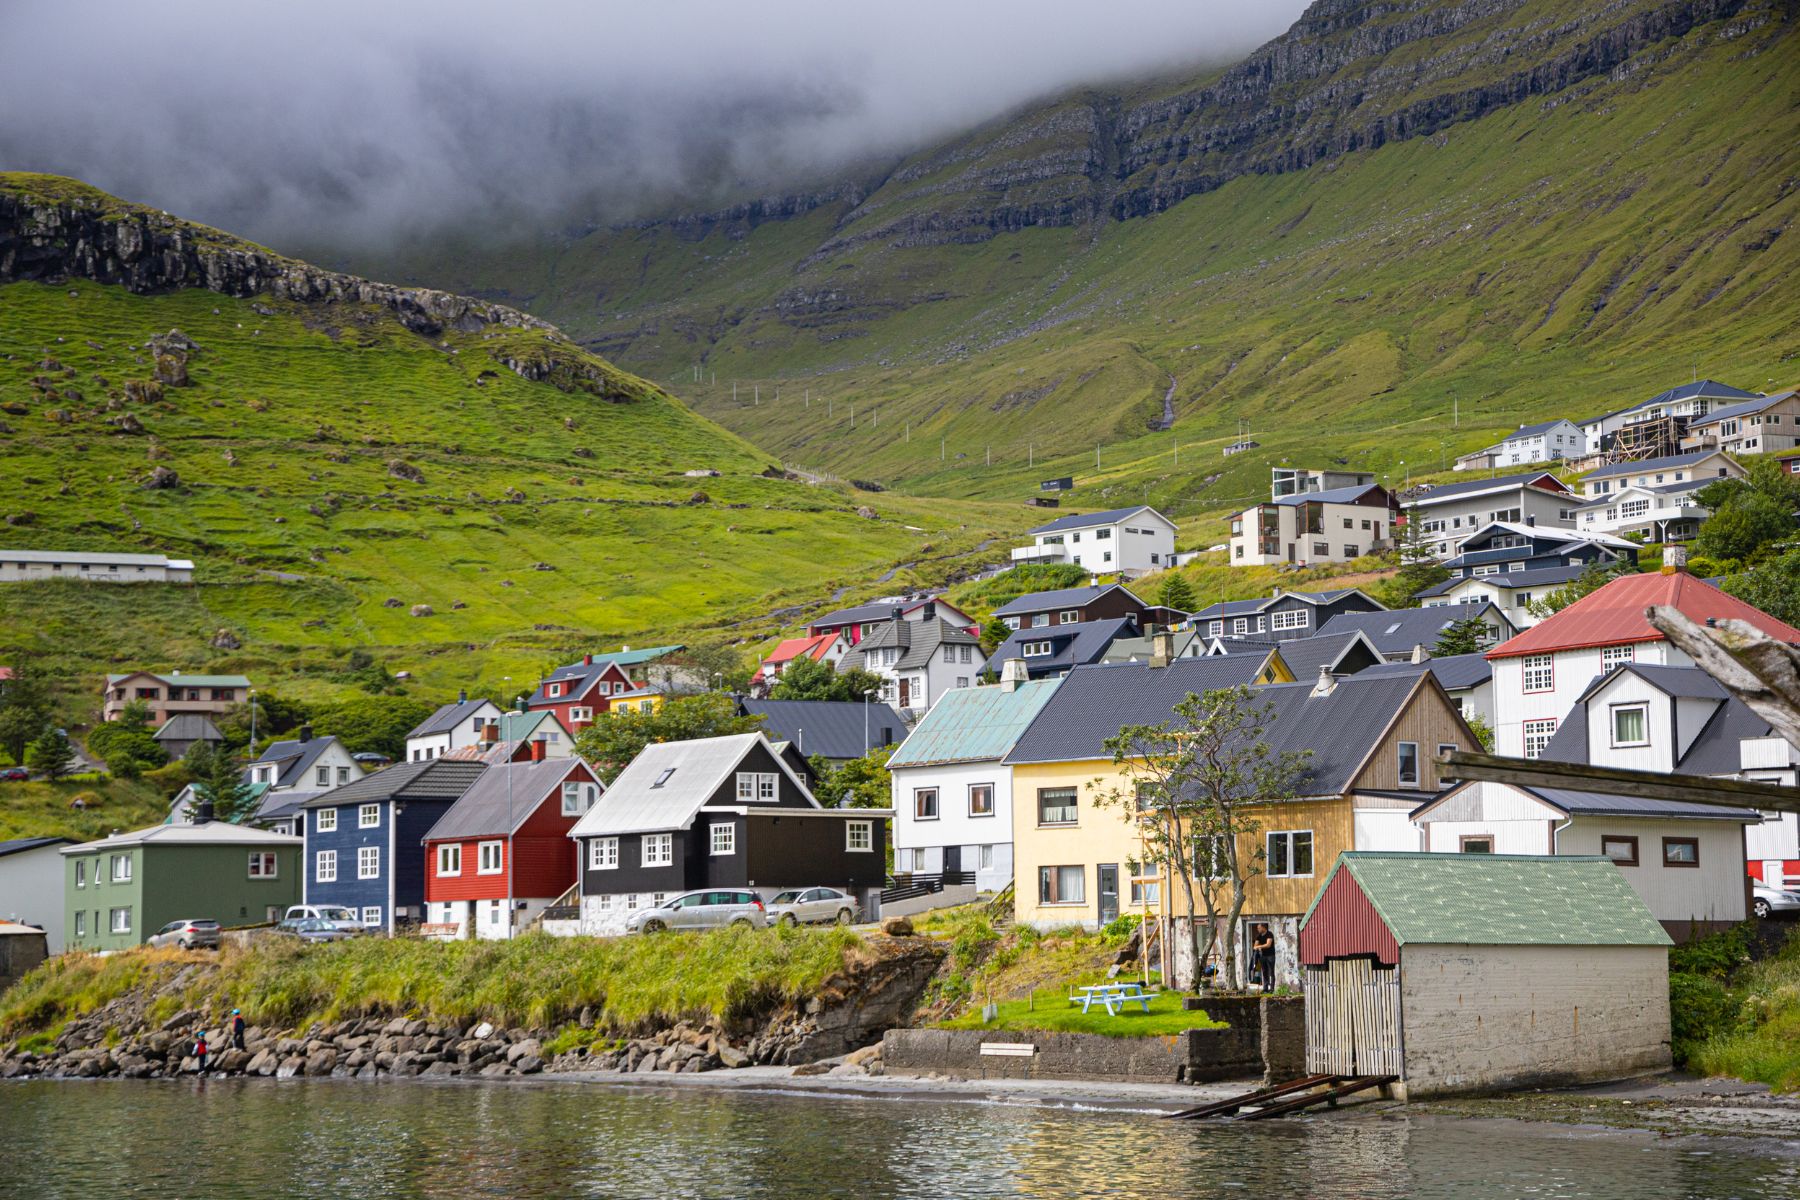 A village in the Faroe Islands.